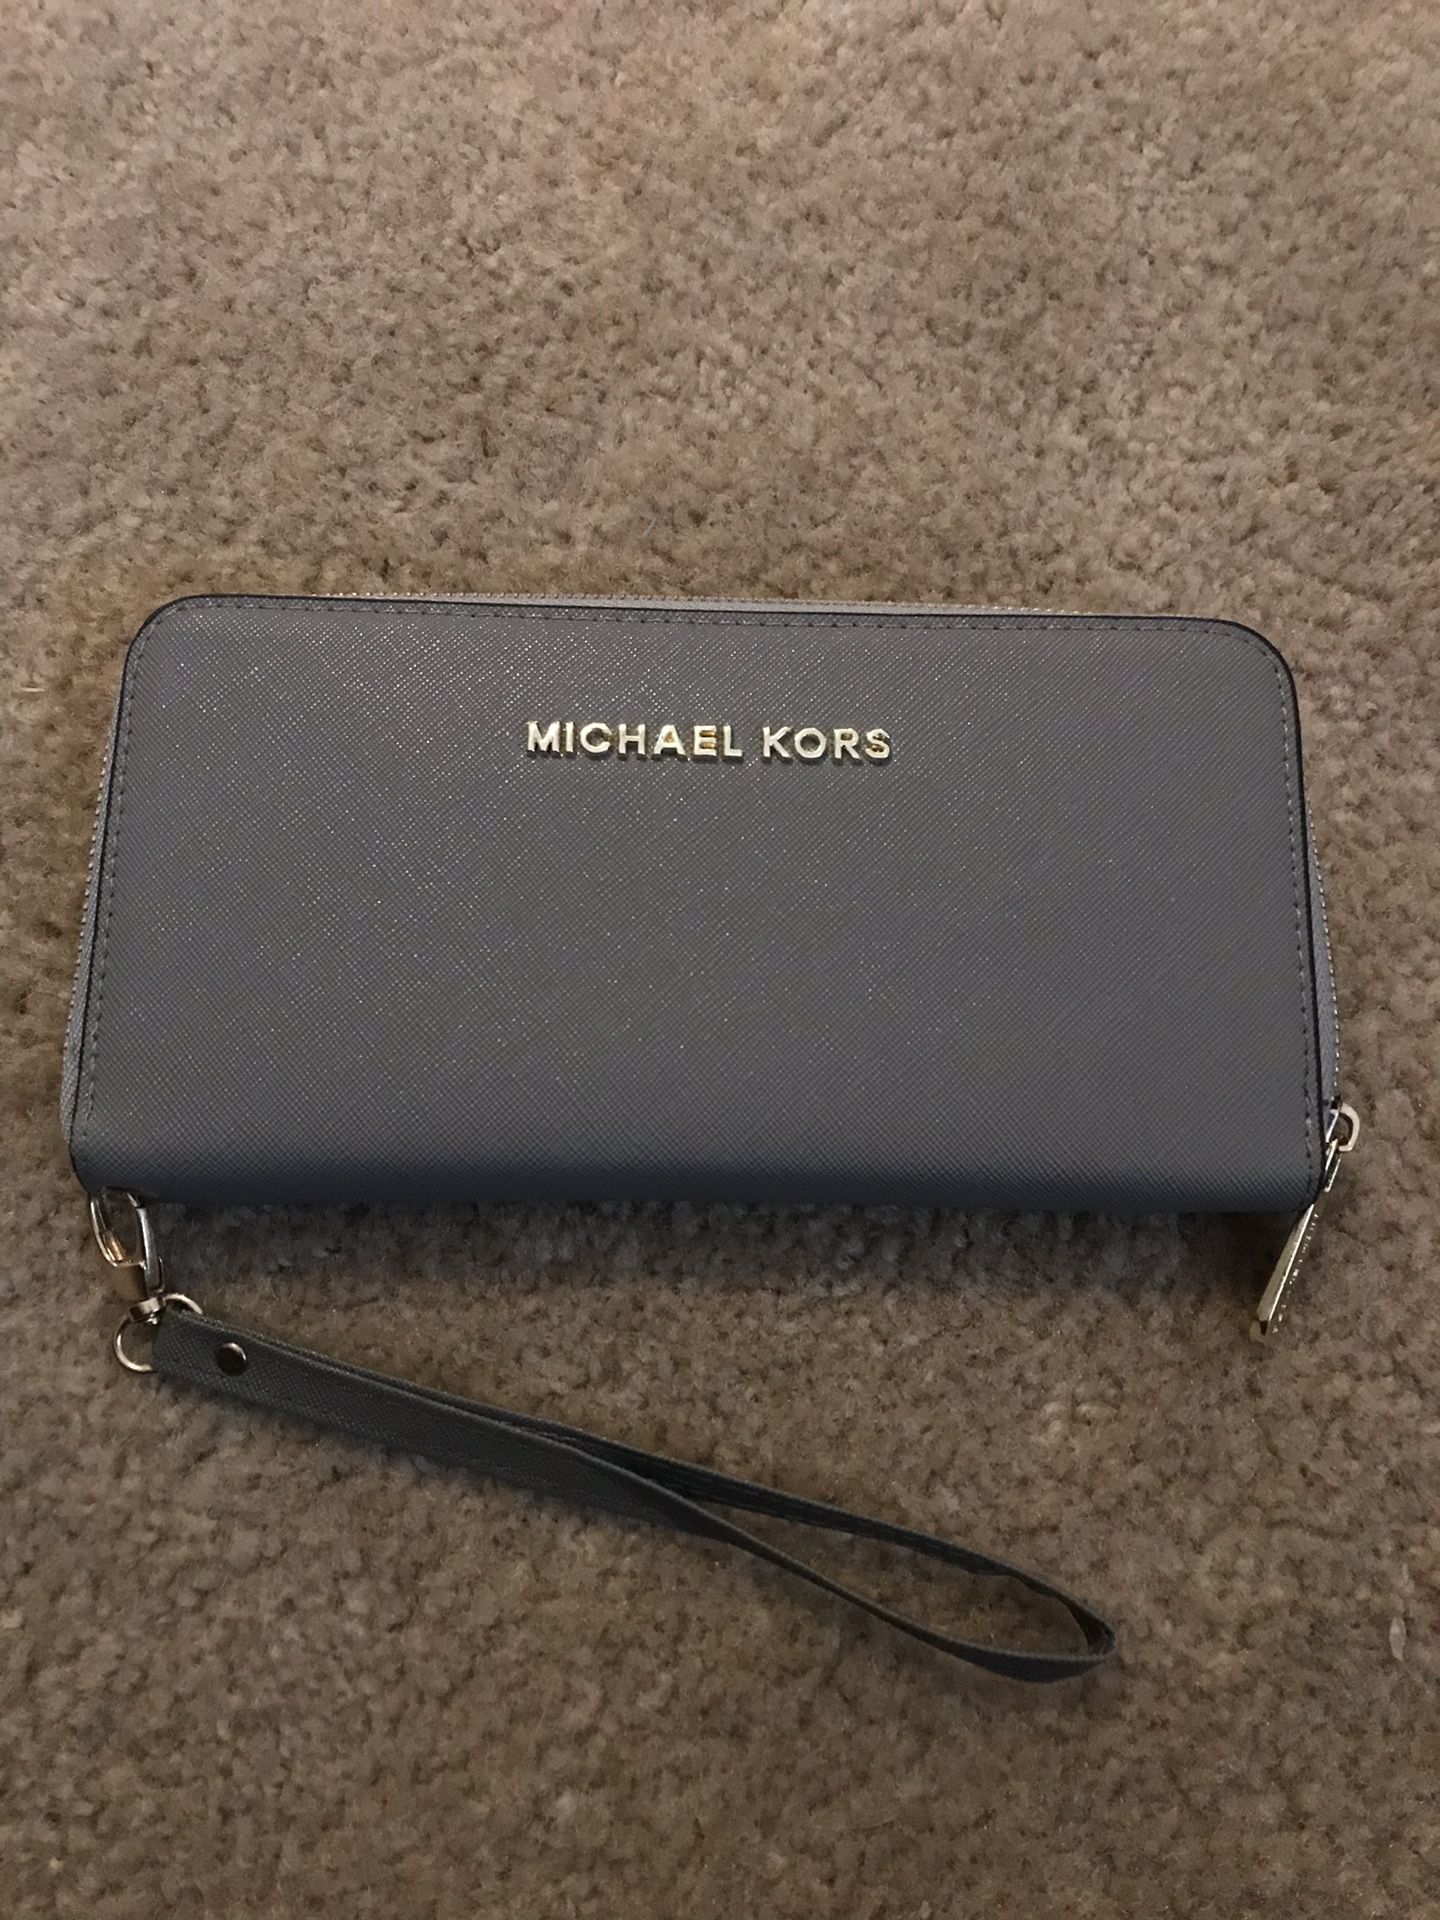 Michael kors zip around wallet brand new.